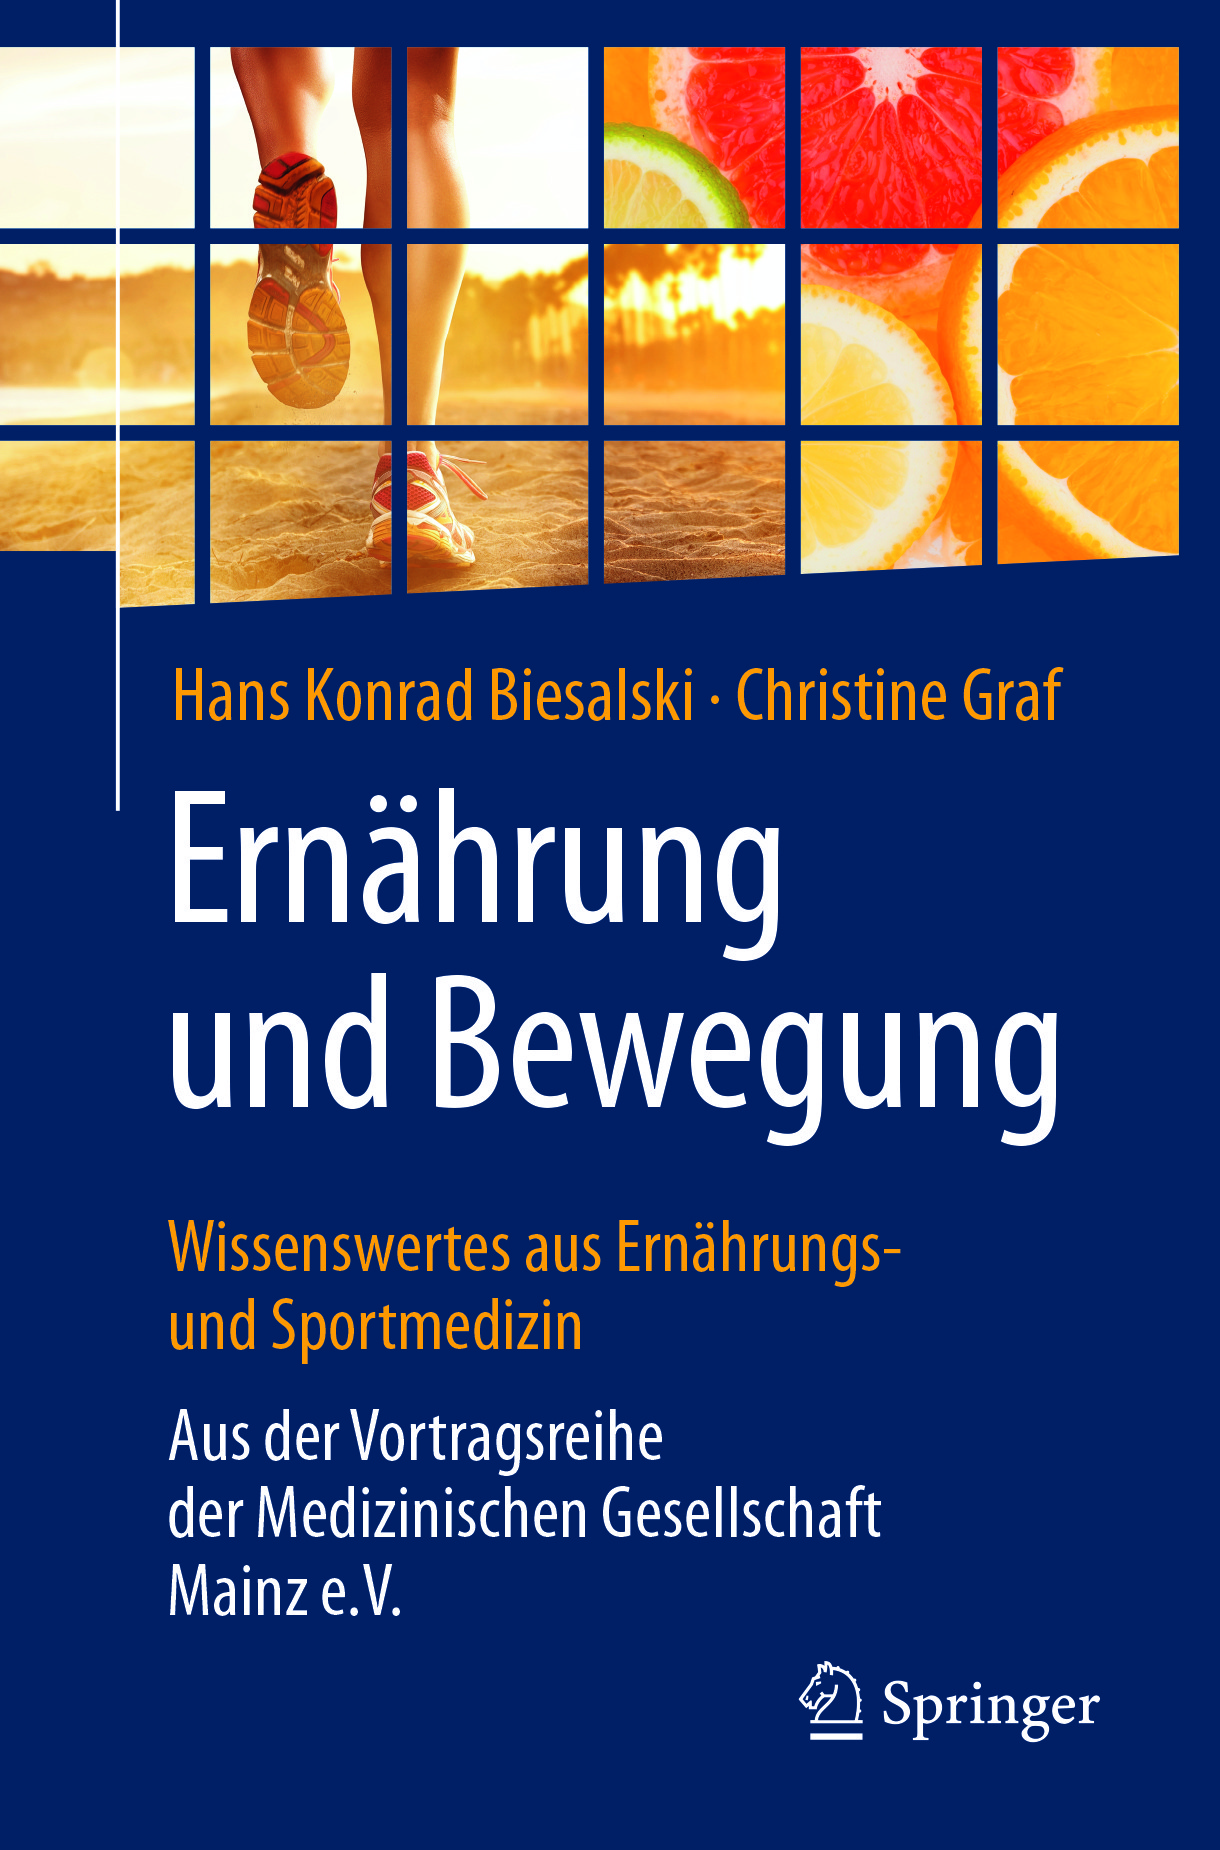 Biesalski, Hans Konrad - Ernährung und Bewegung - Wissenswertes aus Ernährungs- und Sportmedizin, ebook